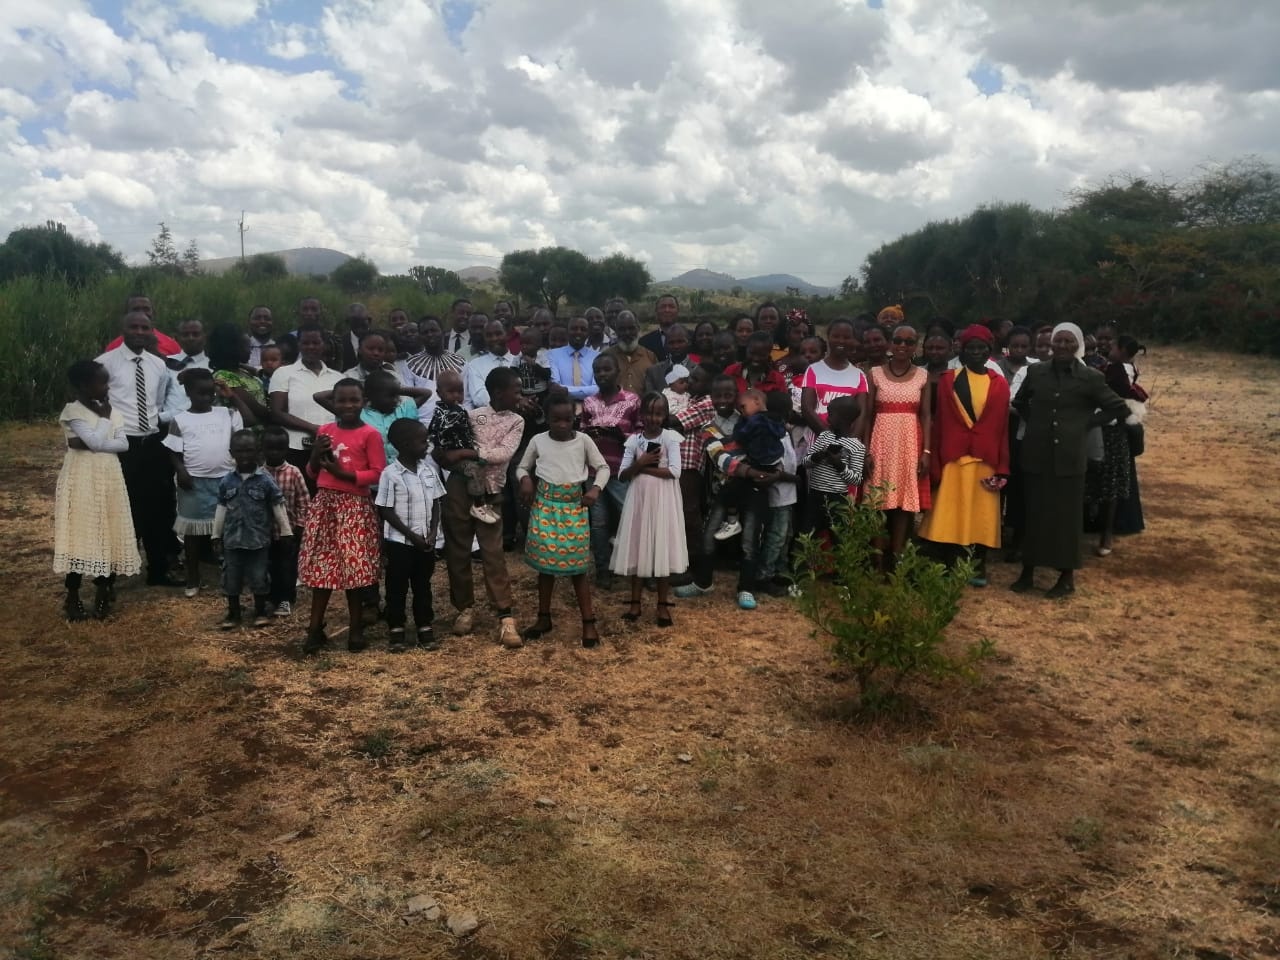 Feast of Tabernacles in Meru, Kenya